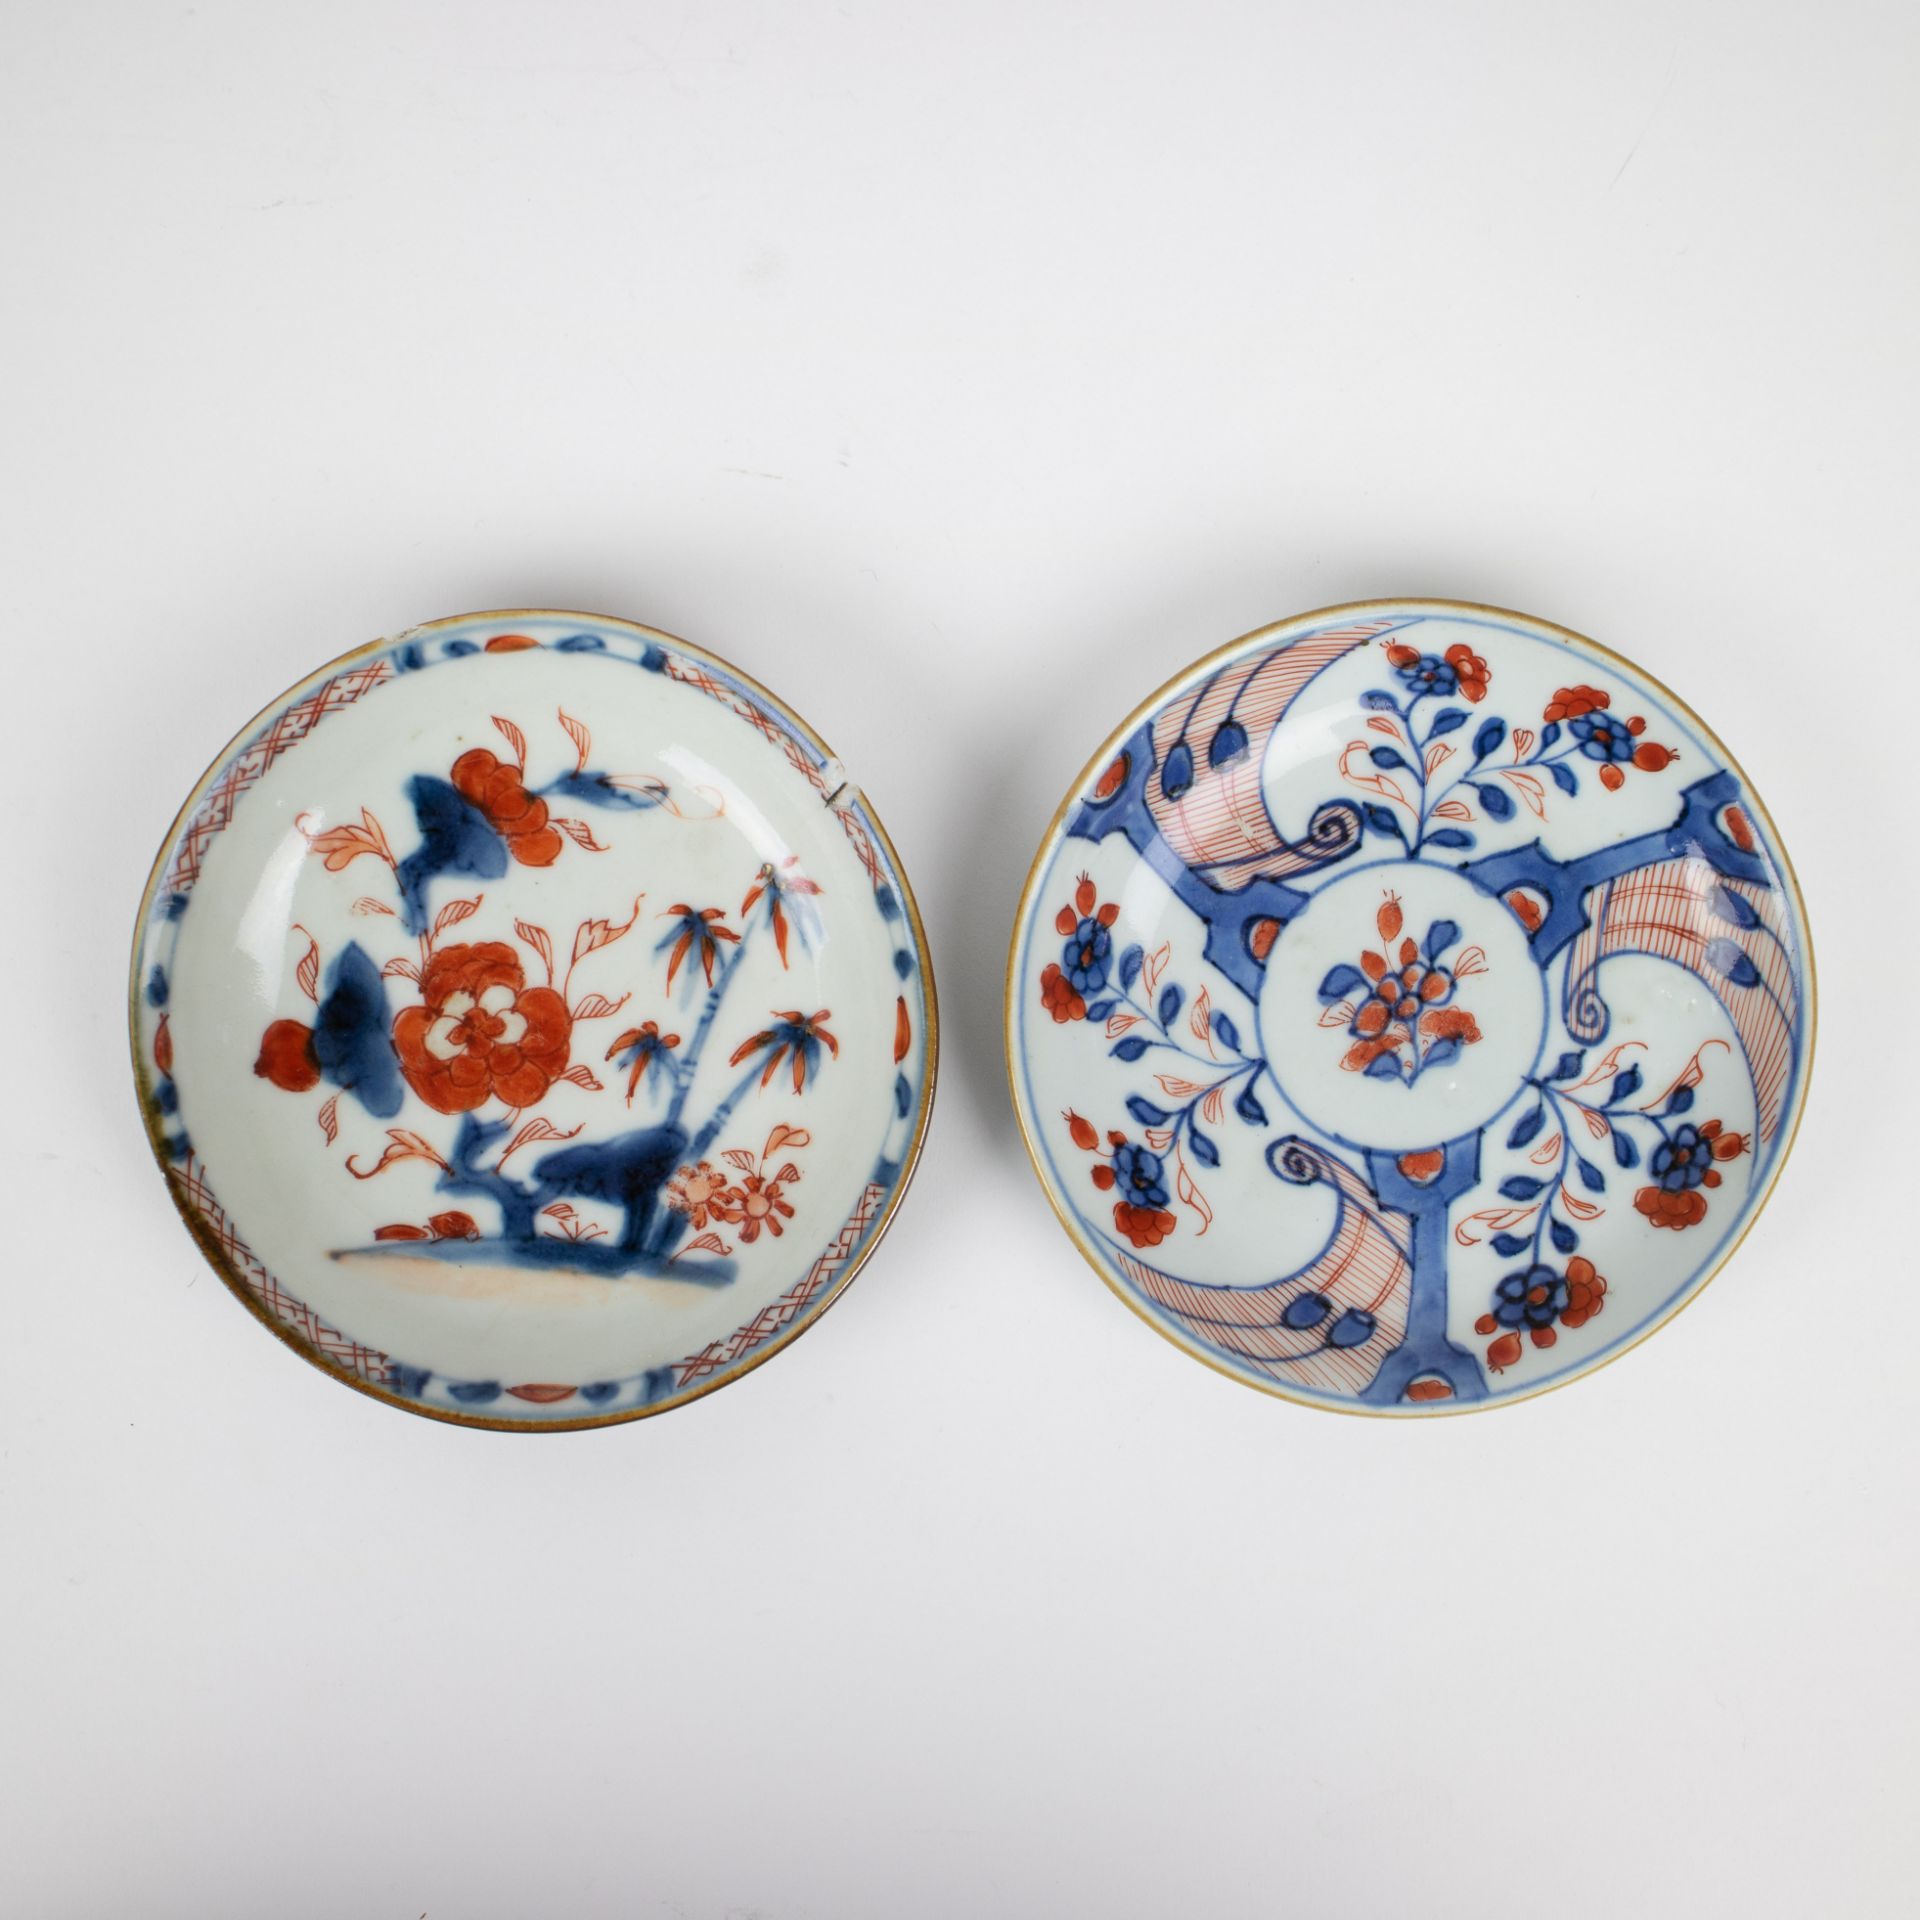 Chinese Imari porcelain, 18e century - Image 4 of 9